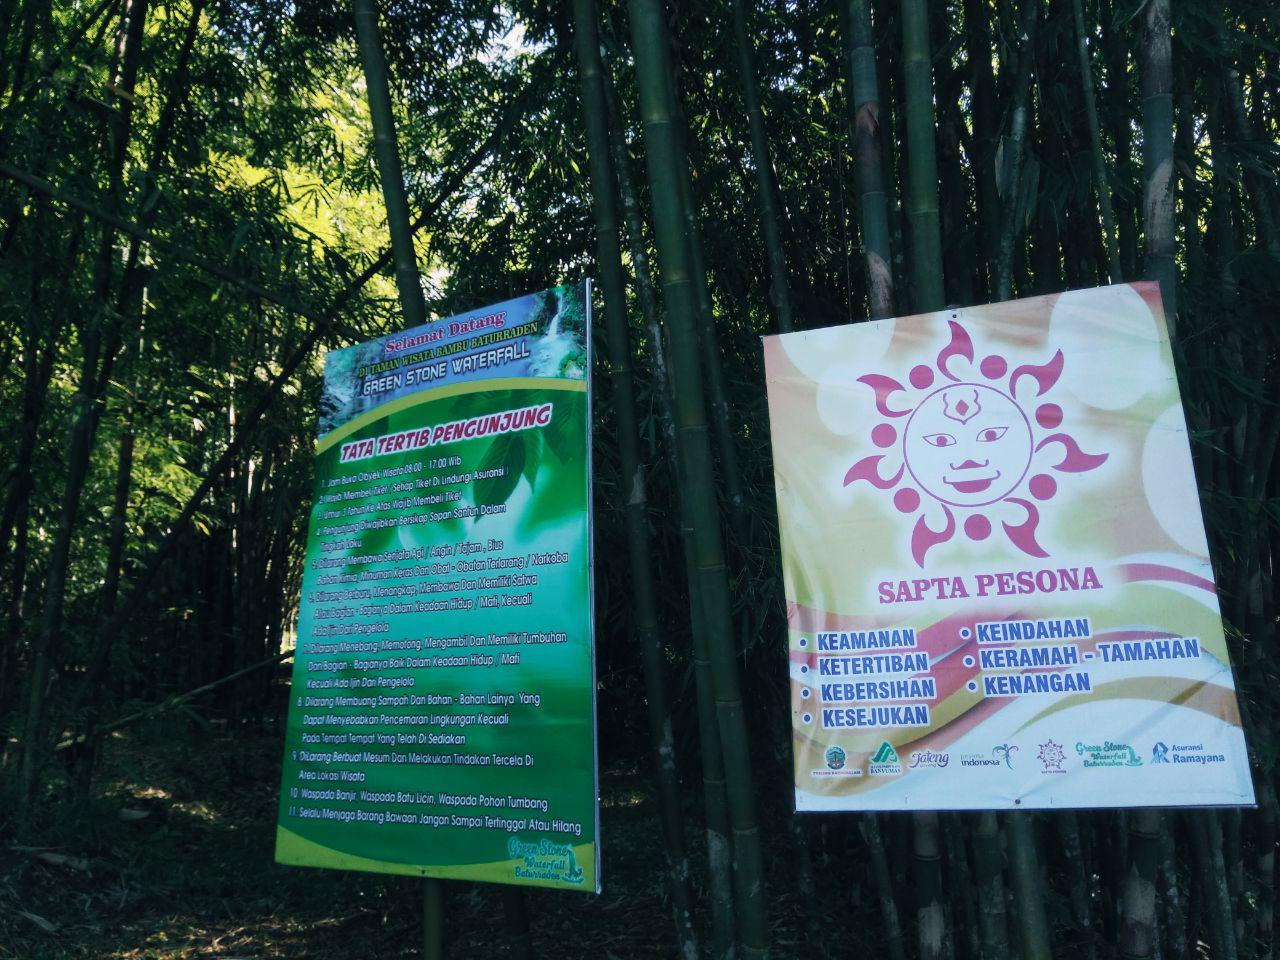 grantnsaipan Taman Wisata Bambu Baturaden